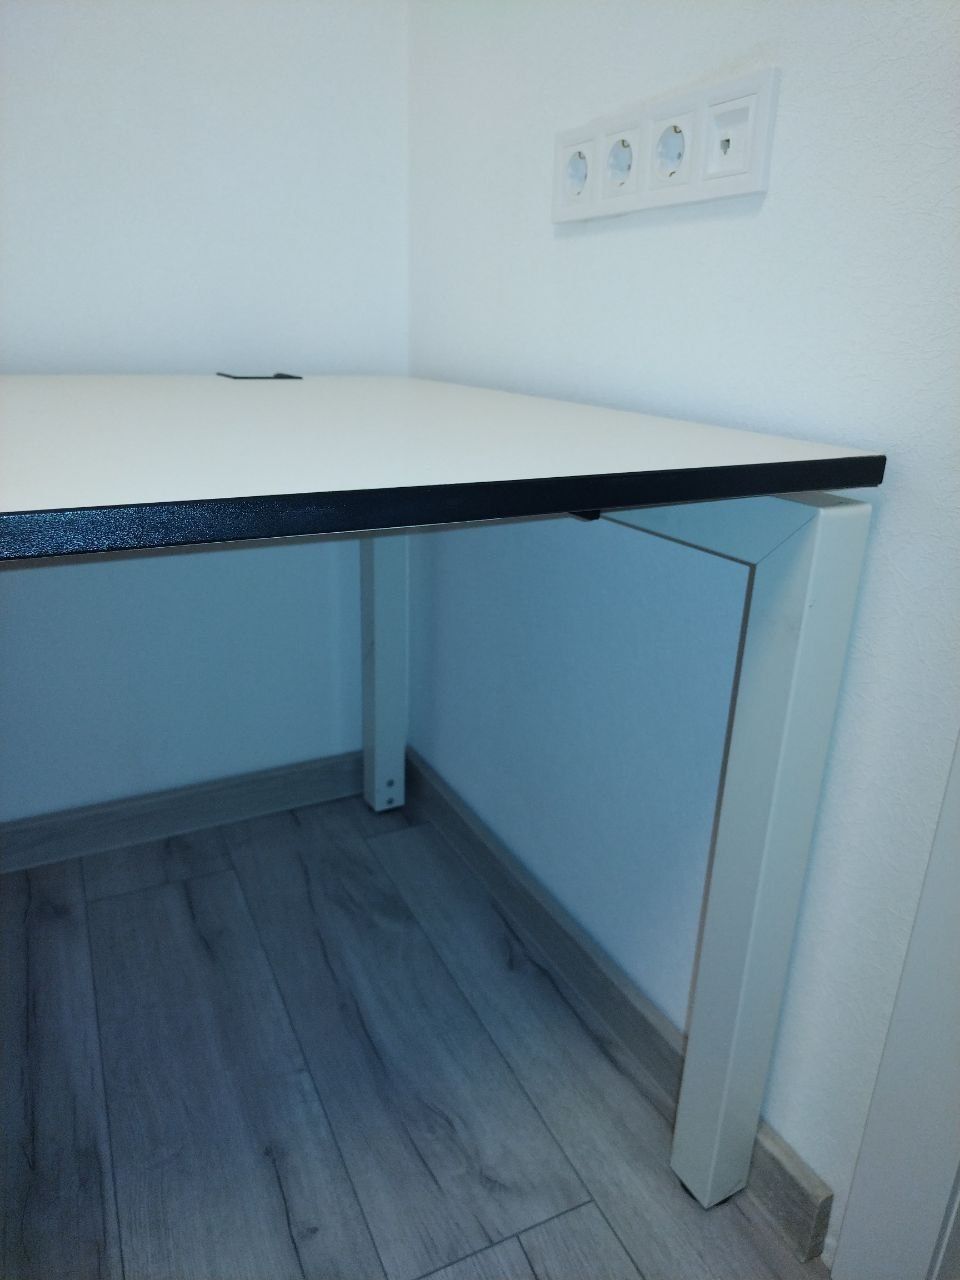 Офісний стіл Kinnarps (Швеція) модель Intime